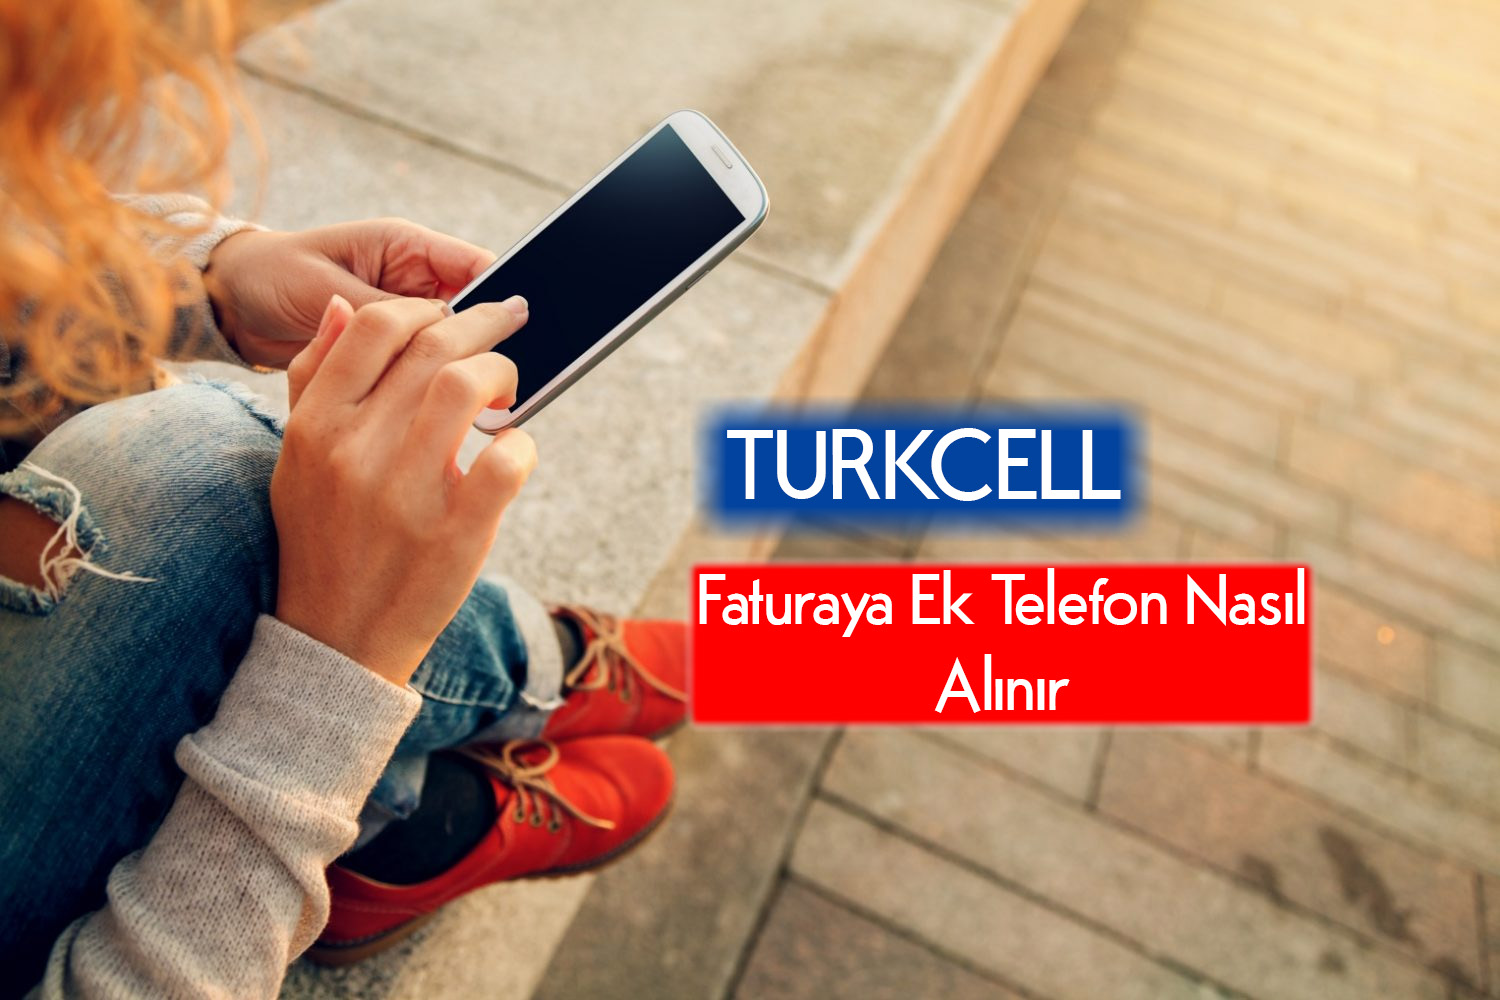 Turkcell Faturaya Ek Telefon Nasıl Alınır